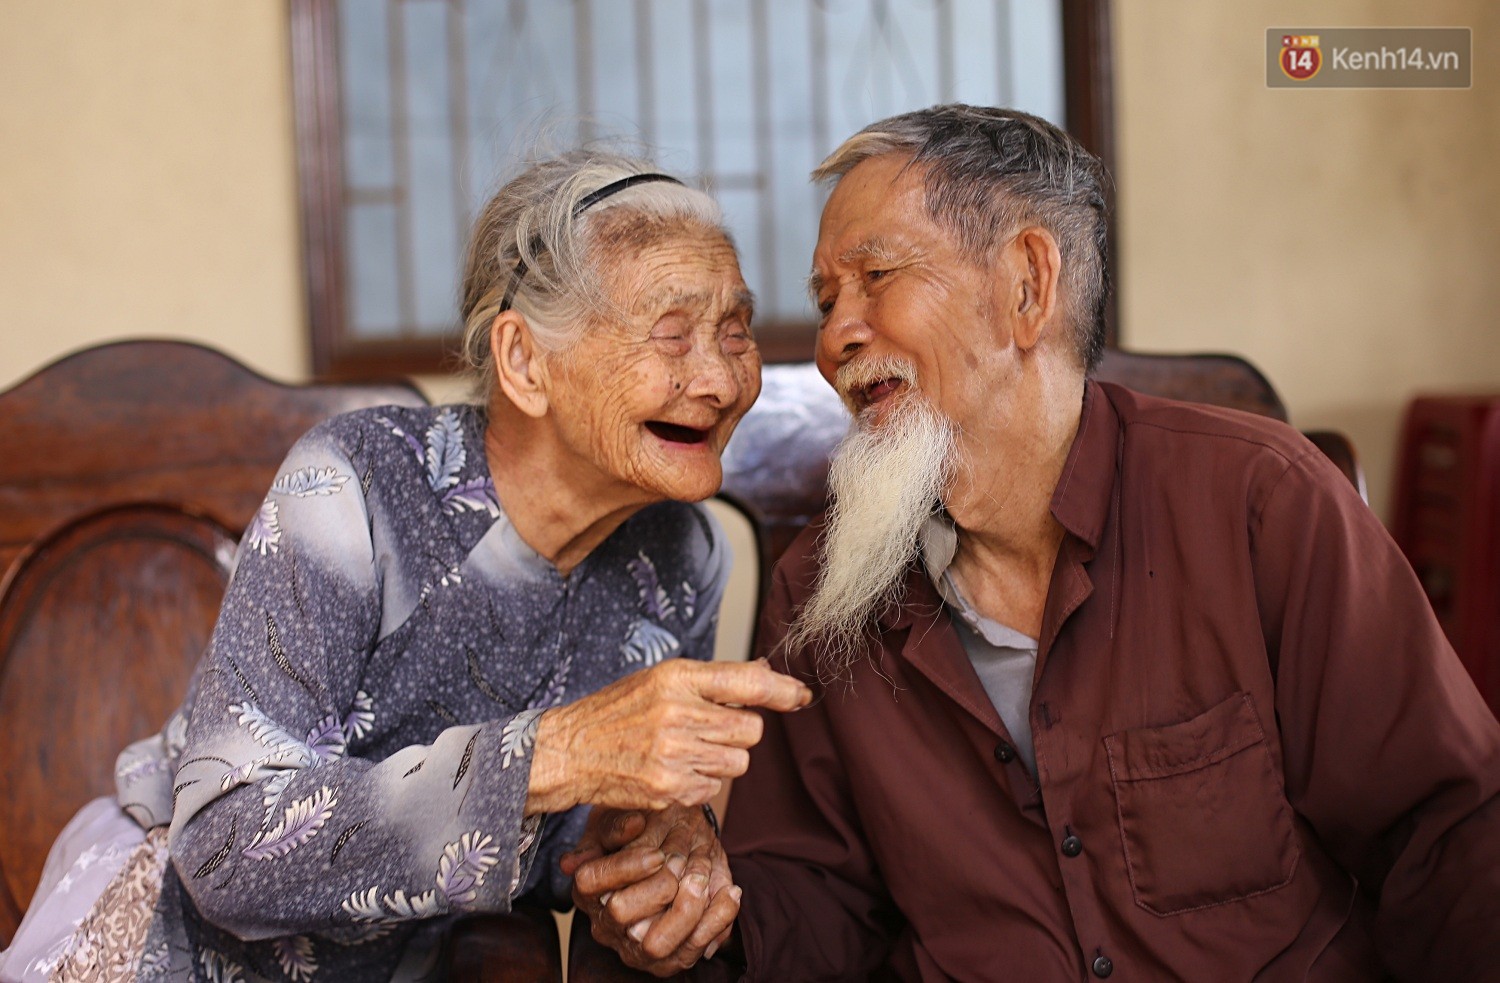 Vợ chồng 94 tuổi: Cặp đôi 94 tuổi trên hình ảnh này khiến chúng ta cảm thấy kinh ngạc, ngưỡng mộ và hâm mộ. Họ không chỉ tràn đầy năng lượng mà còn luôn tươi cười và hạnh phúc bên nhau. Ảnh này đích thực là một lời nhắc nhở cho chúng ta rằng tuổi tác không hề là trở ngại đối với tình yêu đích thực.